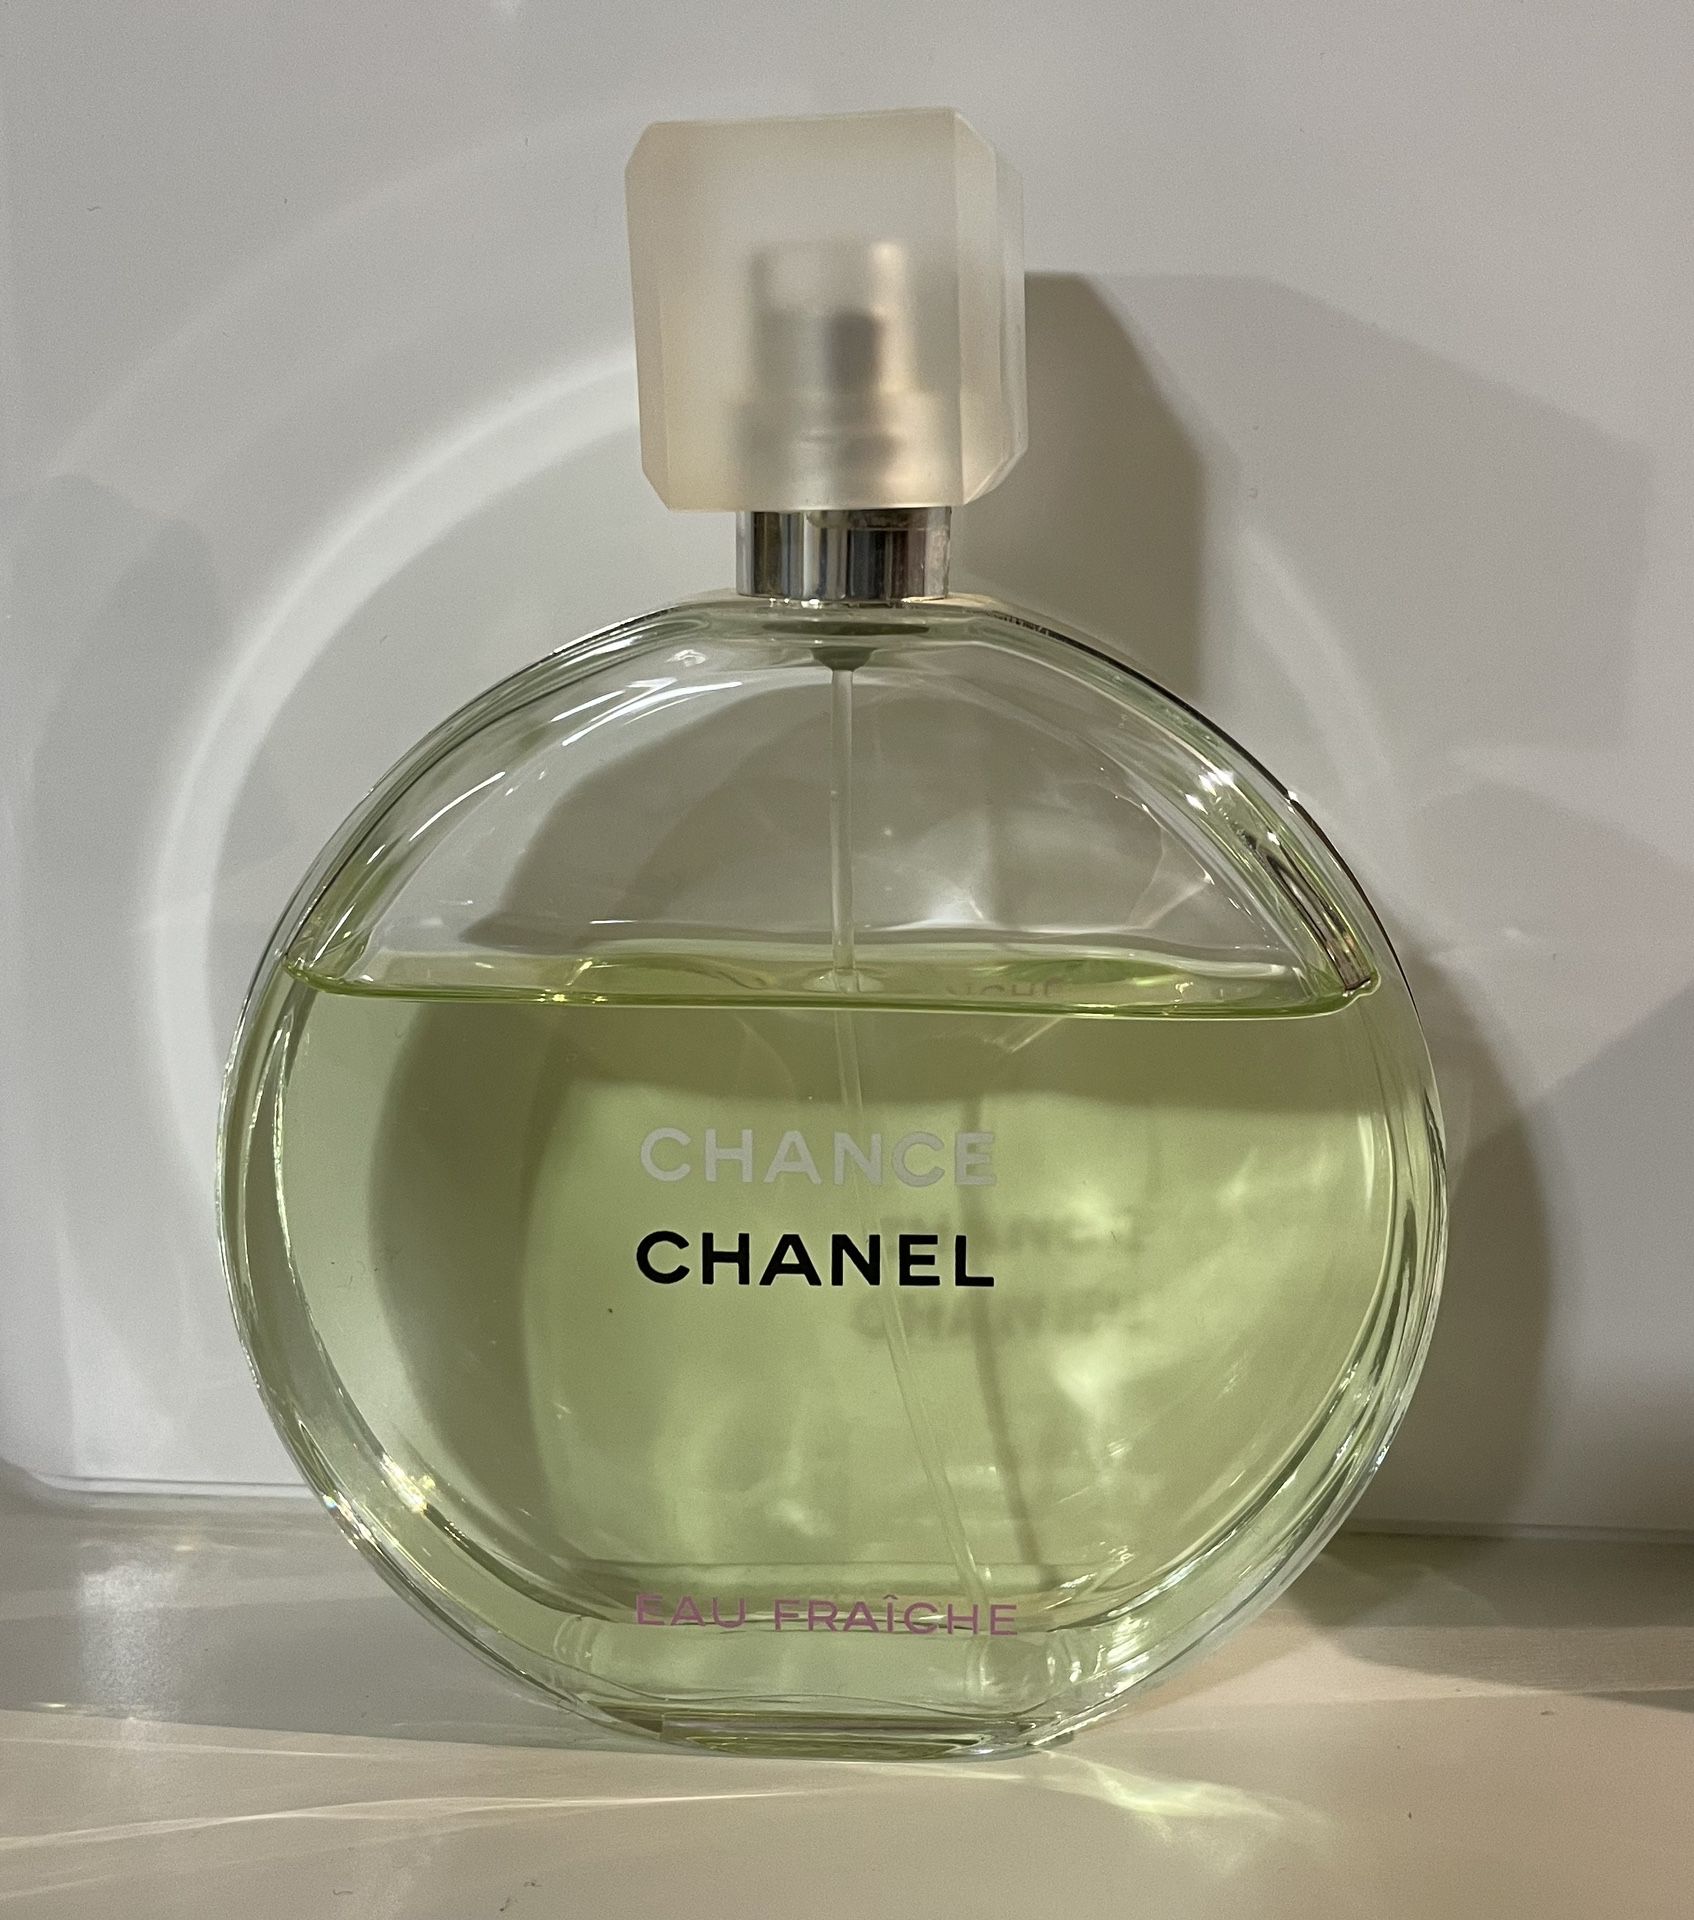 Chanel Chance Eau Fraiche 5 Oz/ 150 Ml